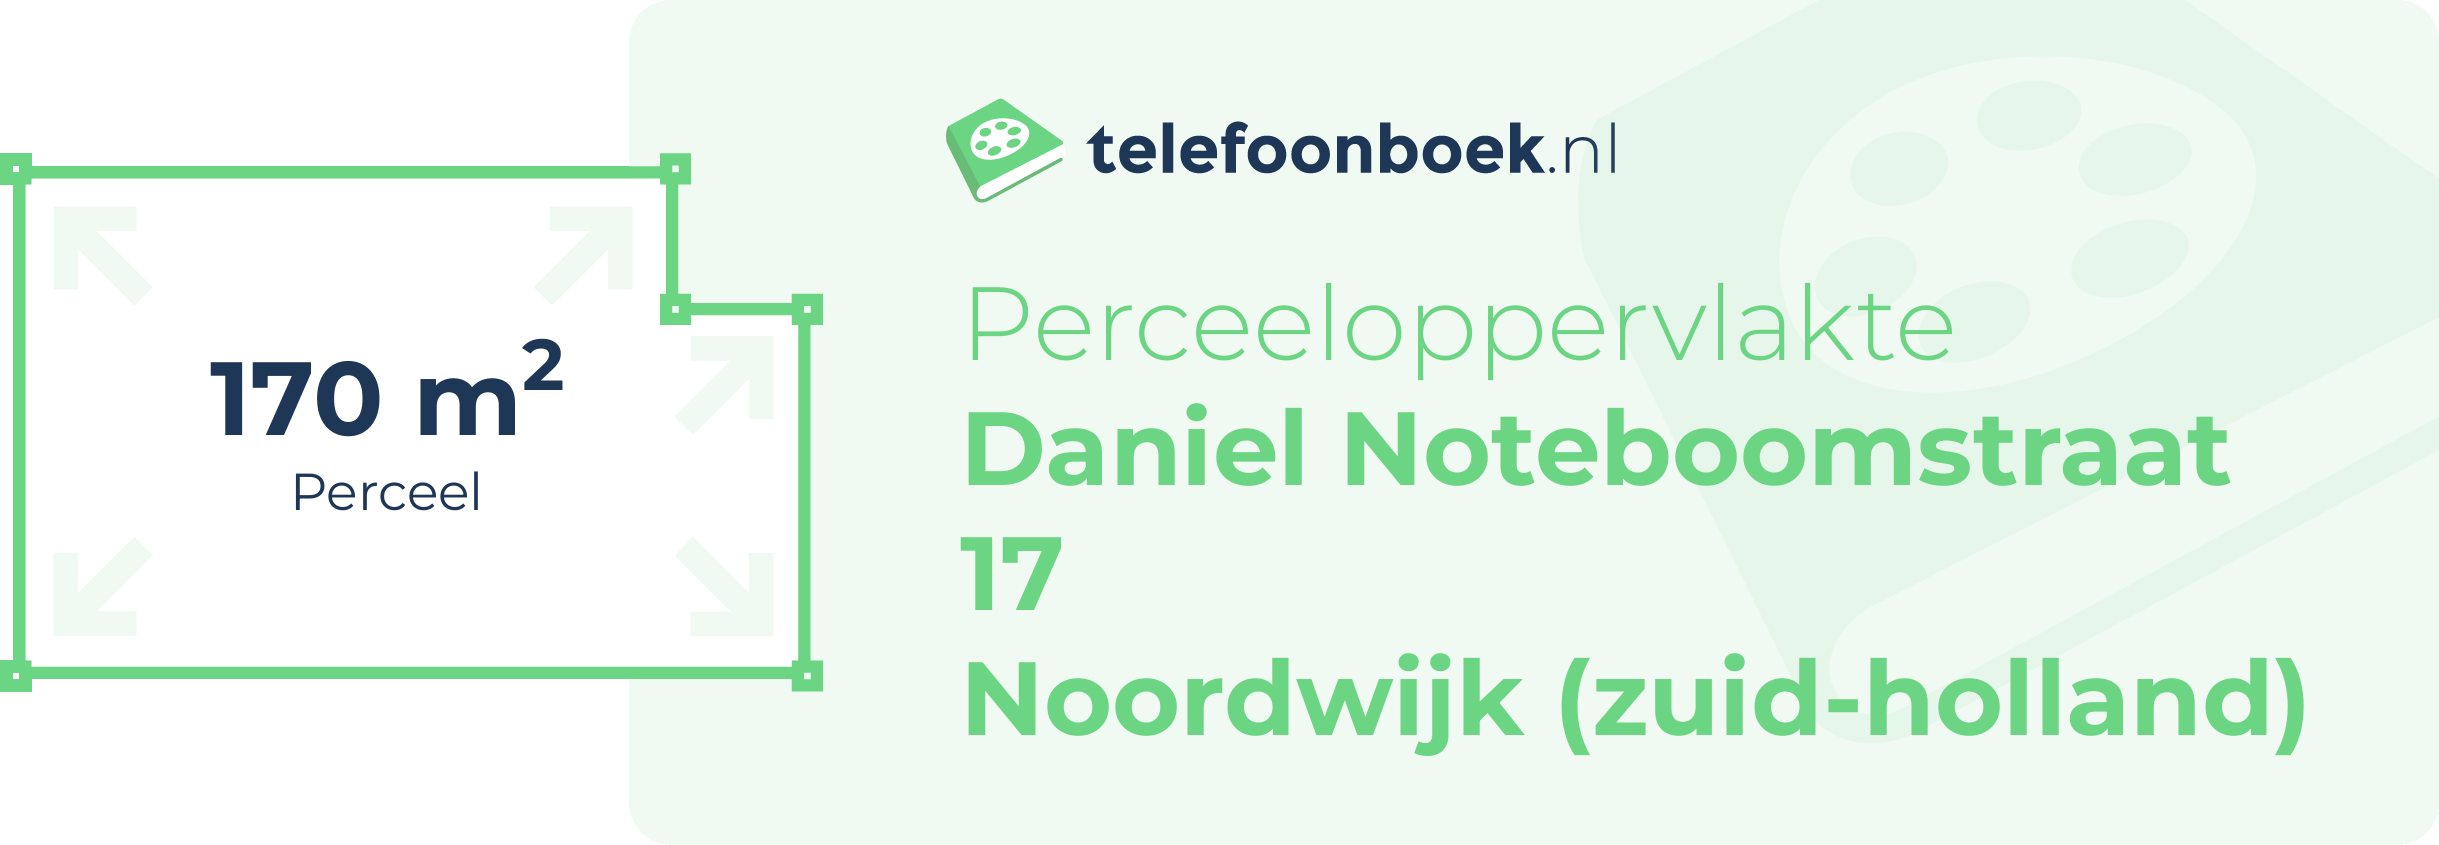 Perceeloppervlakte Daniel Noteboomstraat 17 Noordwijk (Zuid-Holland)